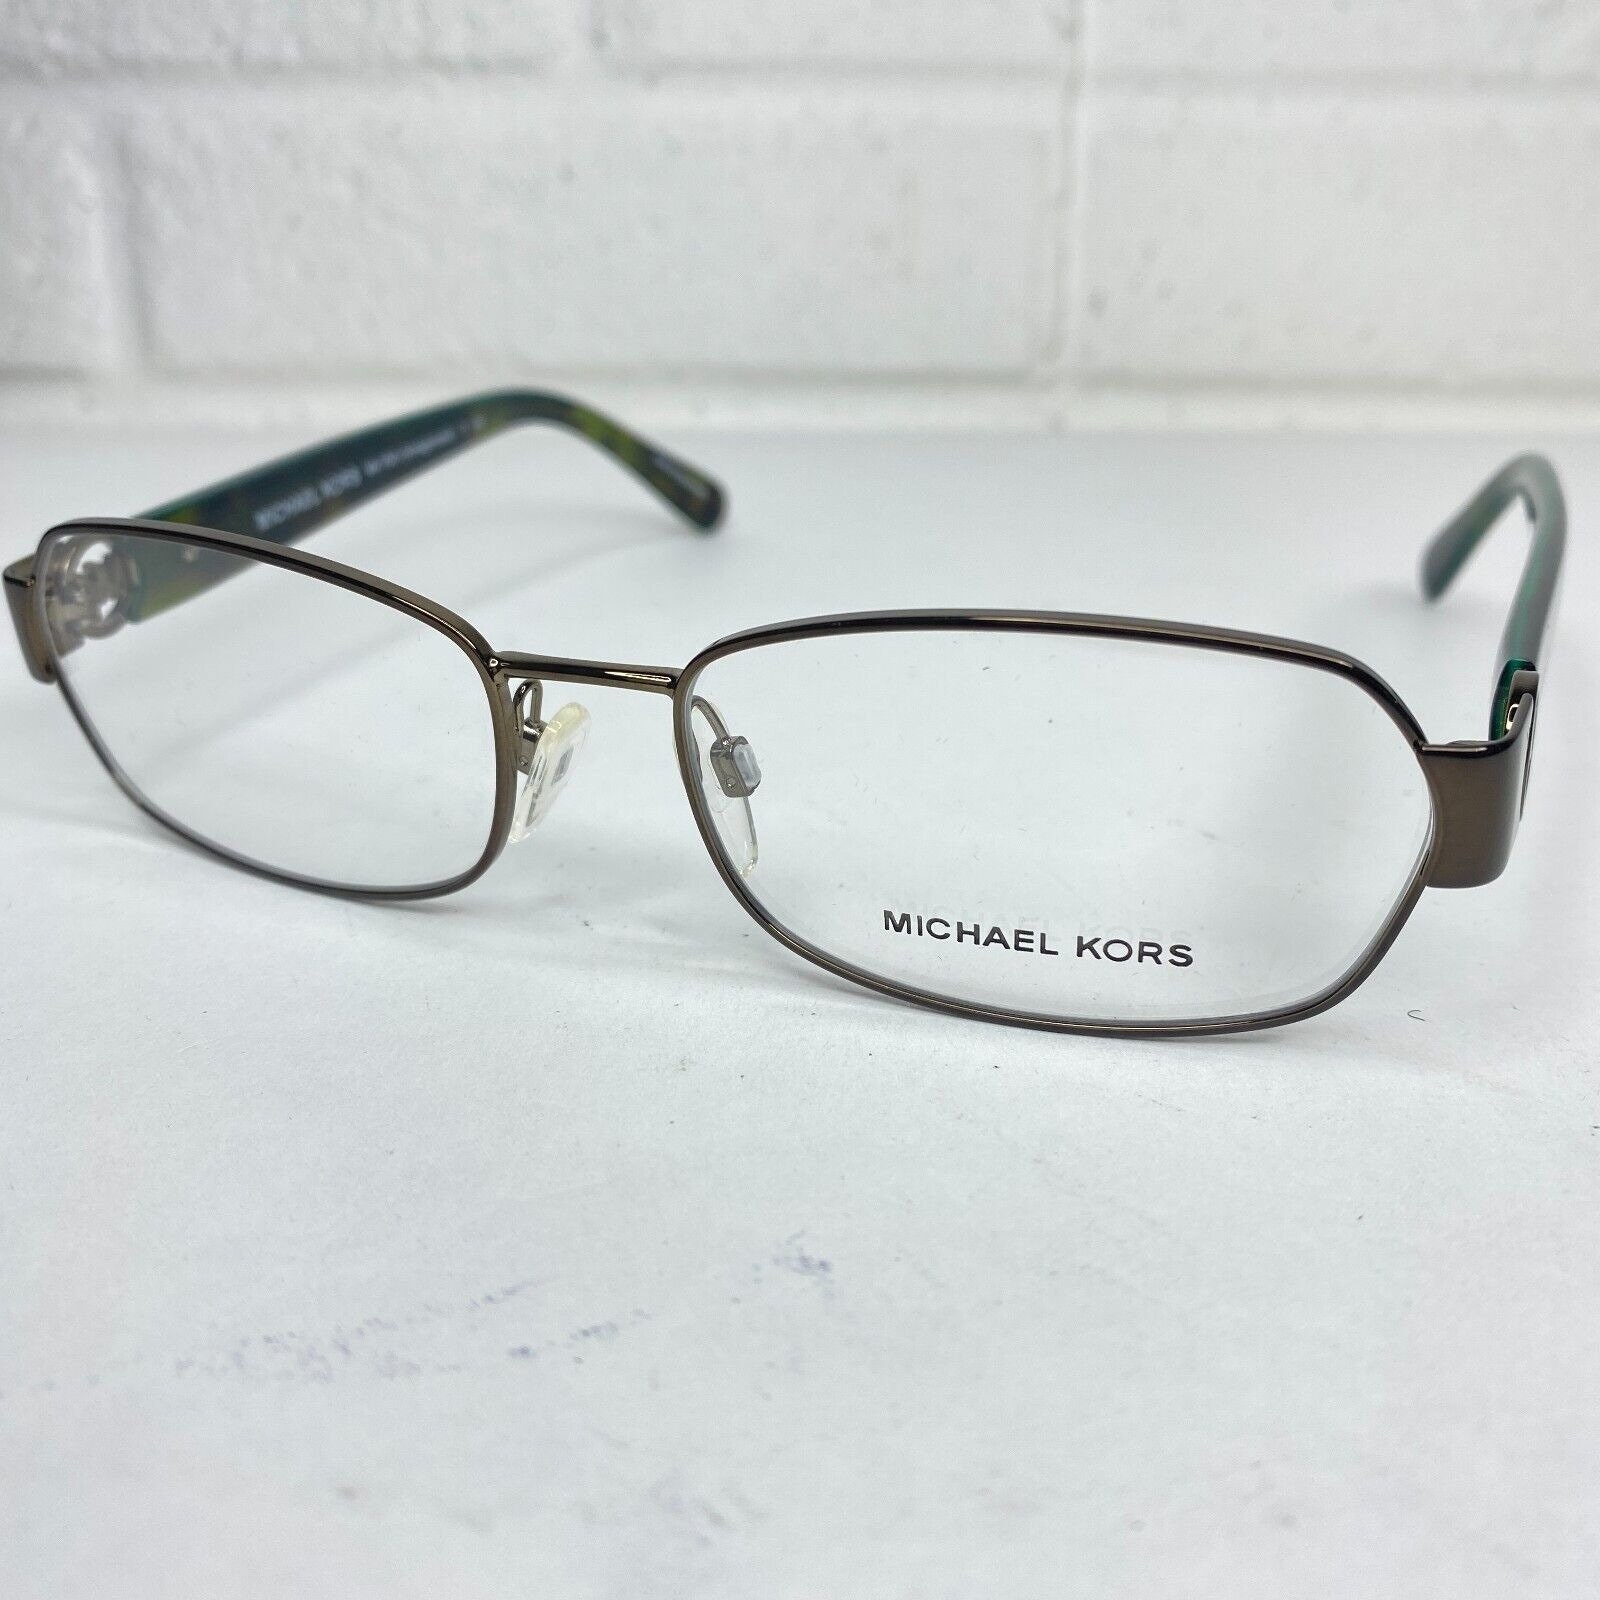 MICHAEL KORS Eyeglasses Frames MK7001 AMAGANSETT 1023 - Etsy